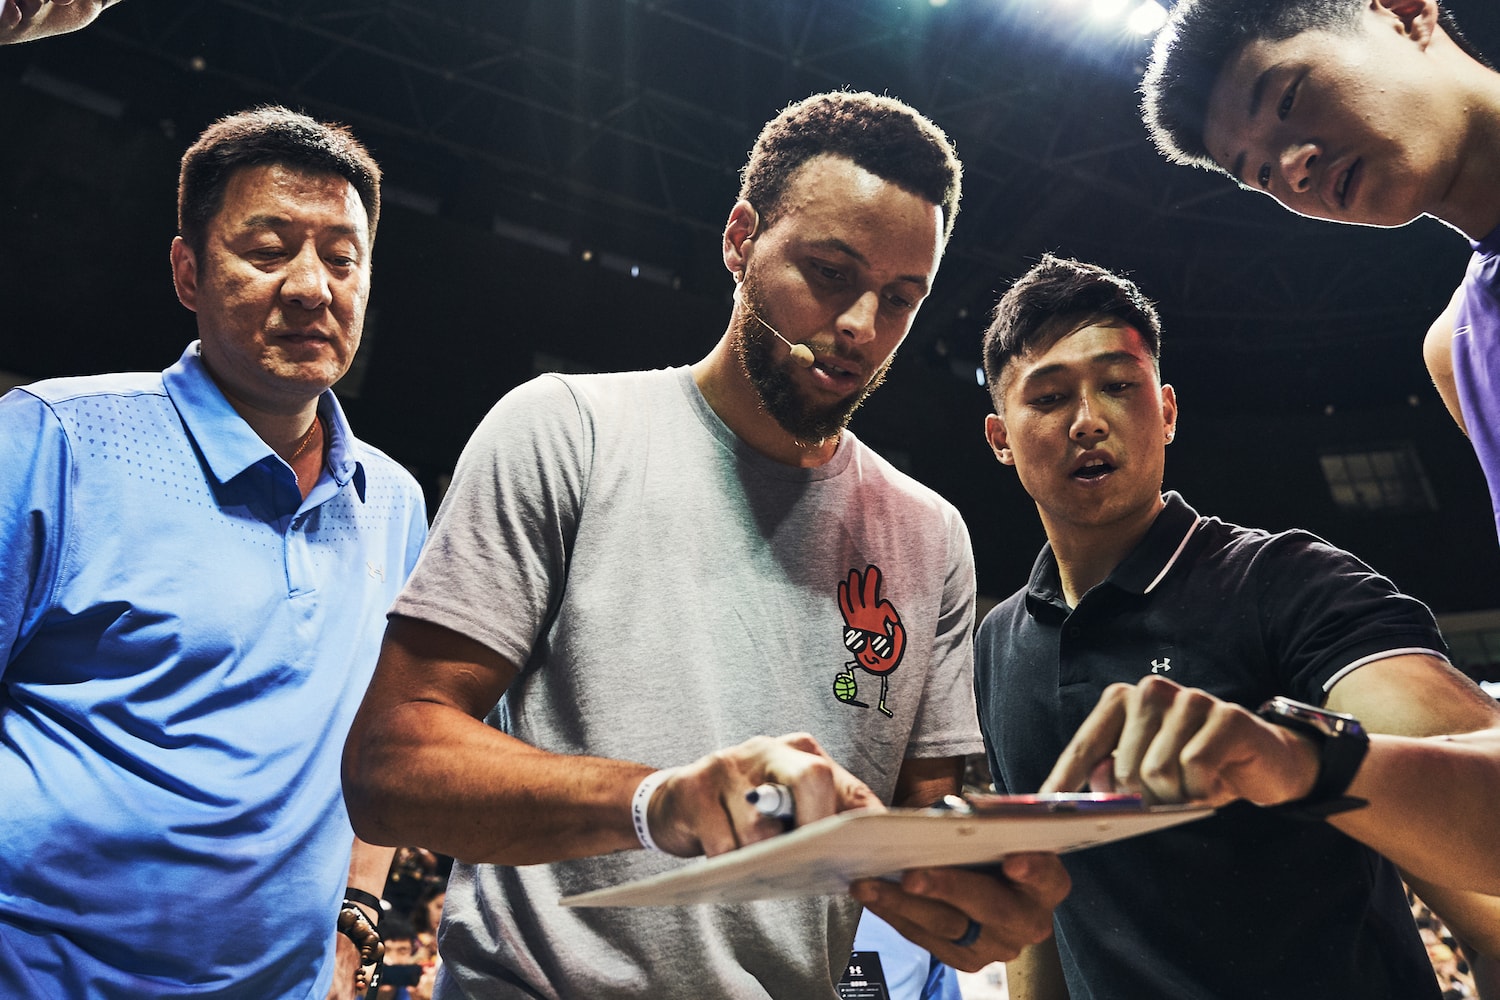 走進 UNDER ARMOUR 2019 籃球中國行上海站活动